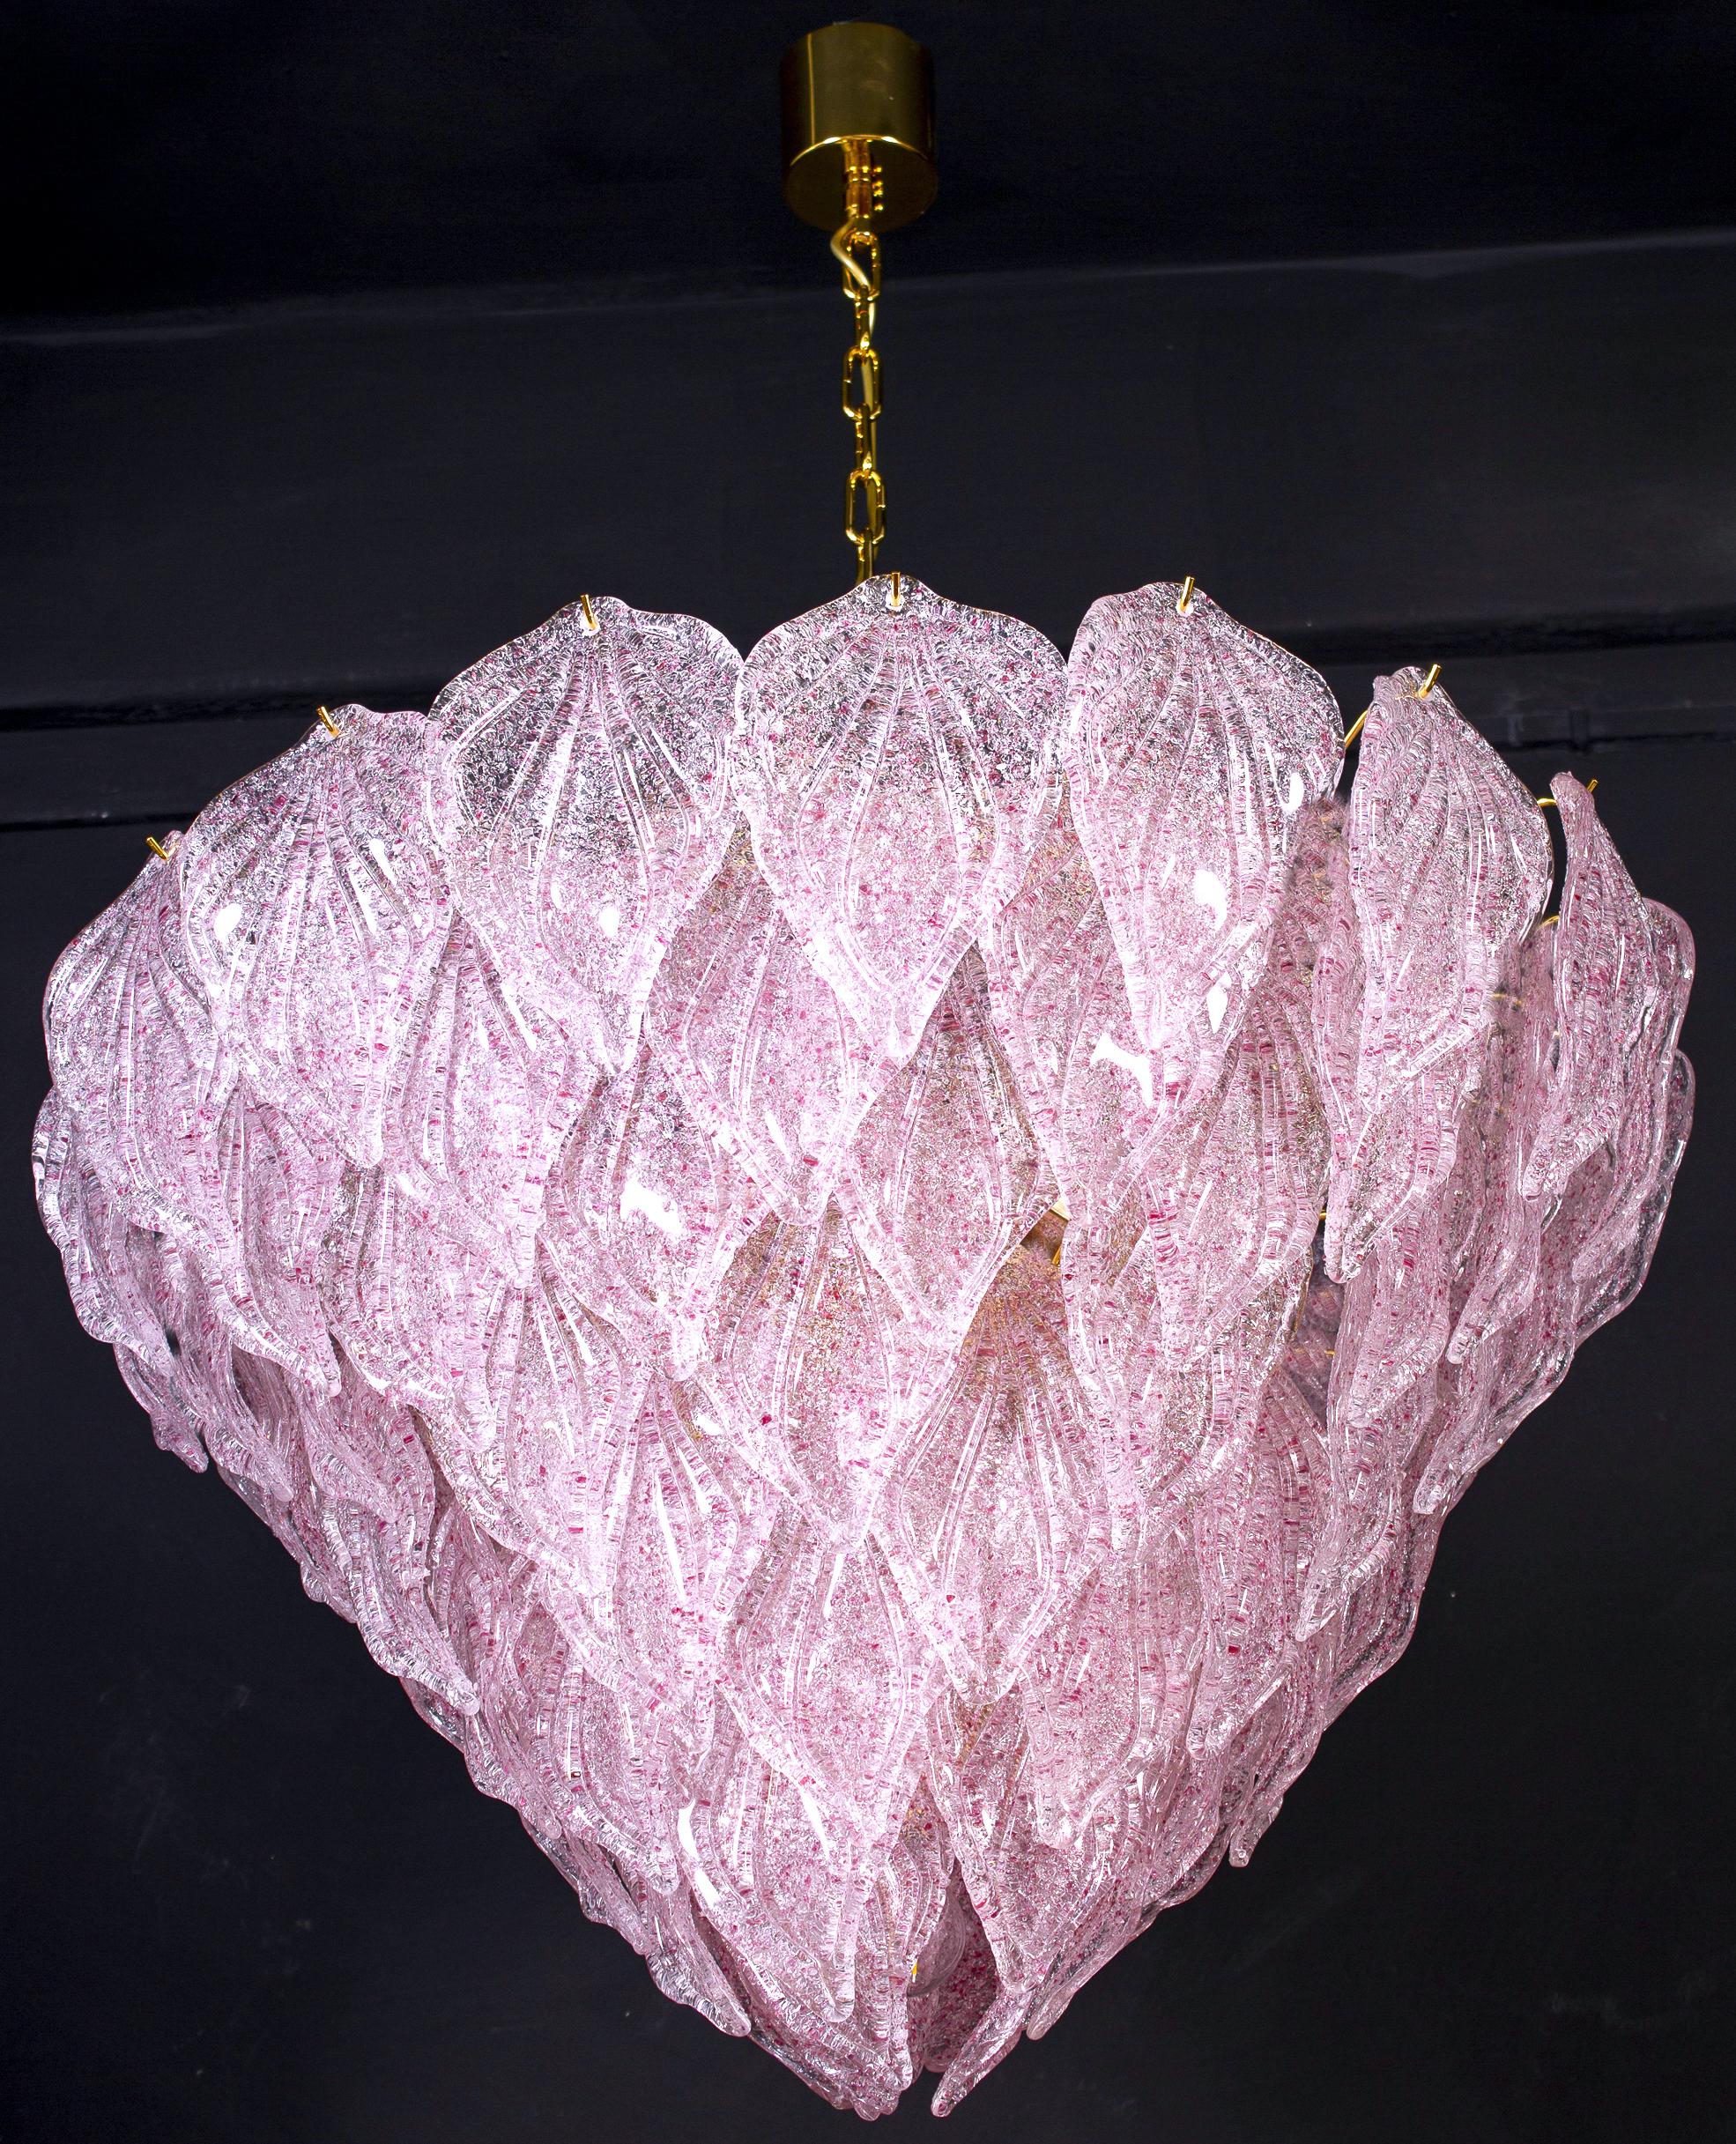 Lustre rose polaire de Murano, chacun avec 88 précieuses feuilles de verre soufflé à la main suspendues au cadre en laiton. Effet de lumière spectaculaire.
Disponible également en paire et en quatre paires d'appliques.

Mesures : Hauteur 75 cm, avec